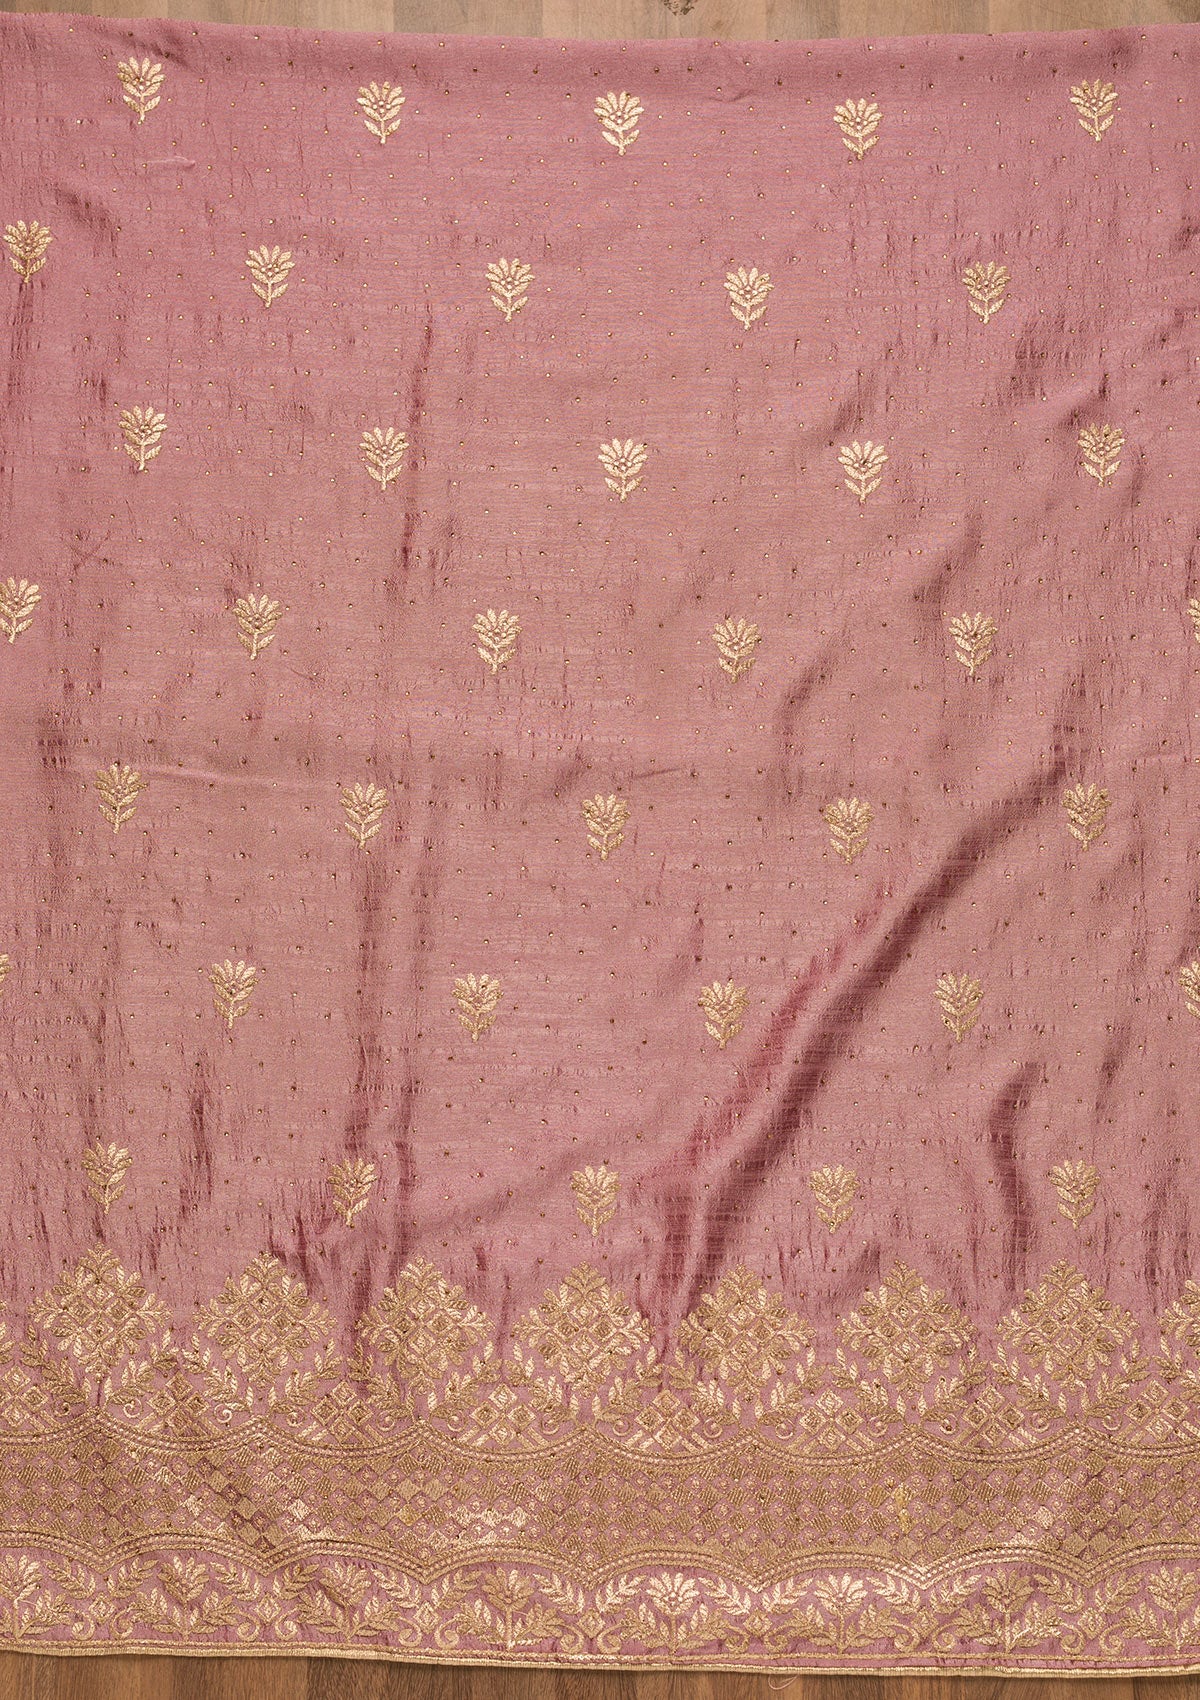 Lavender Zariwork Art Silk Unstitched Salwar Suit